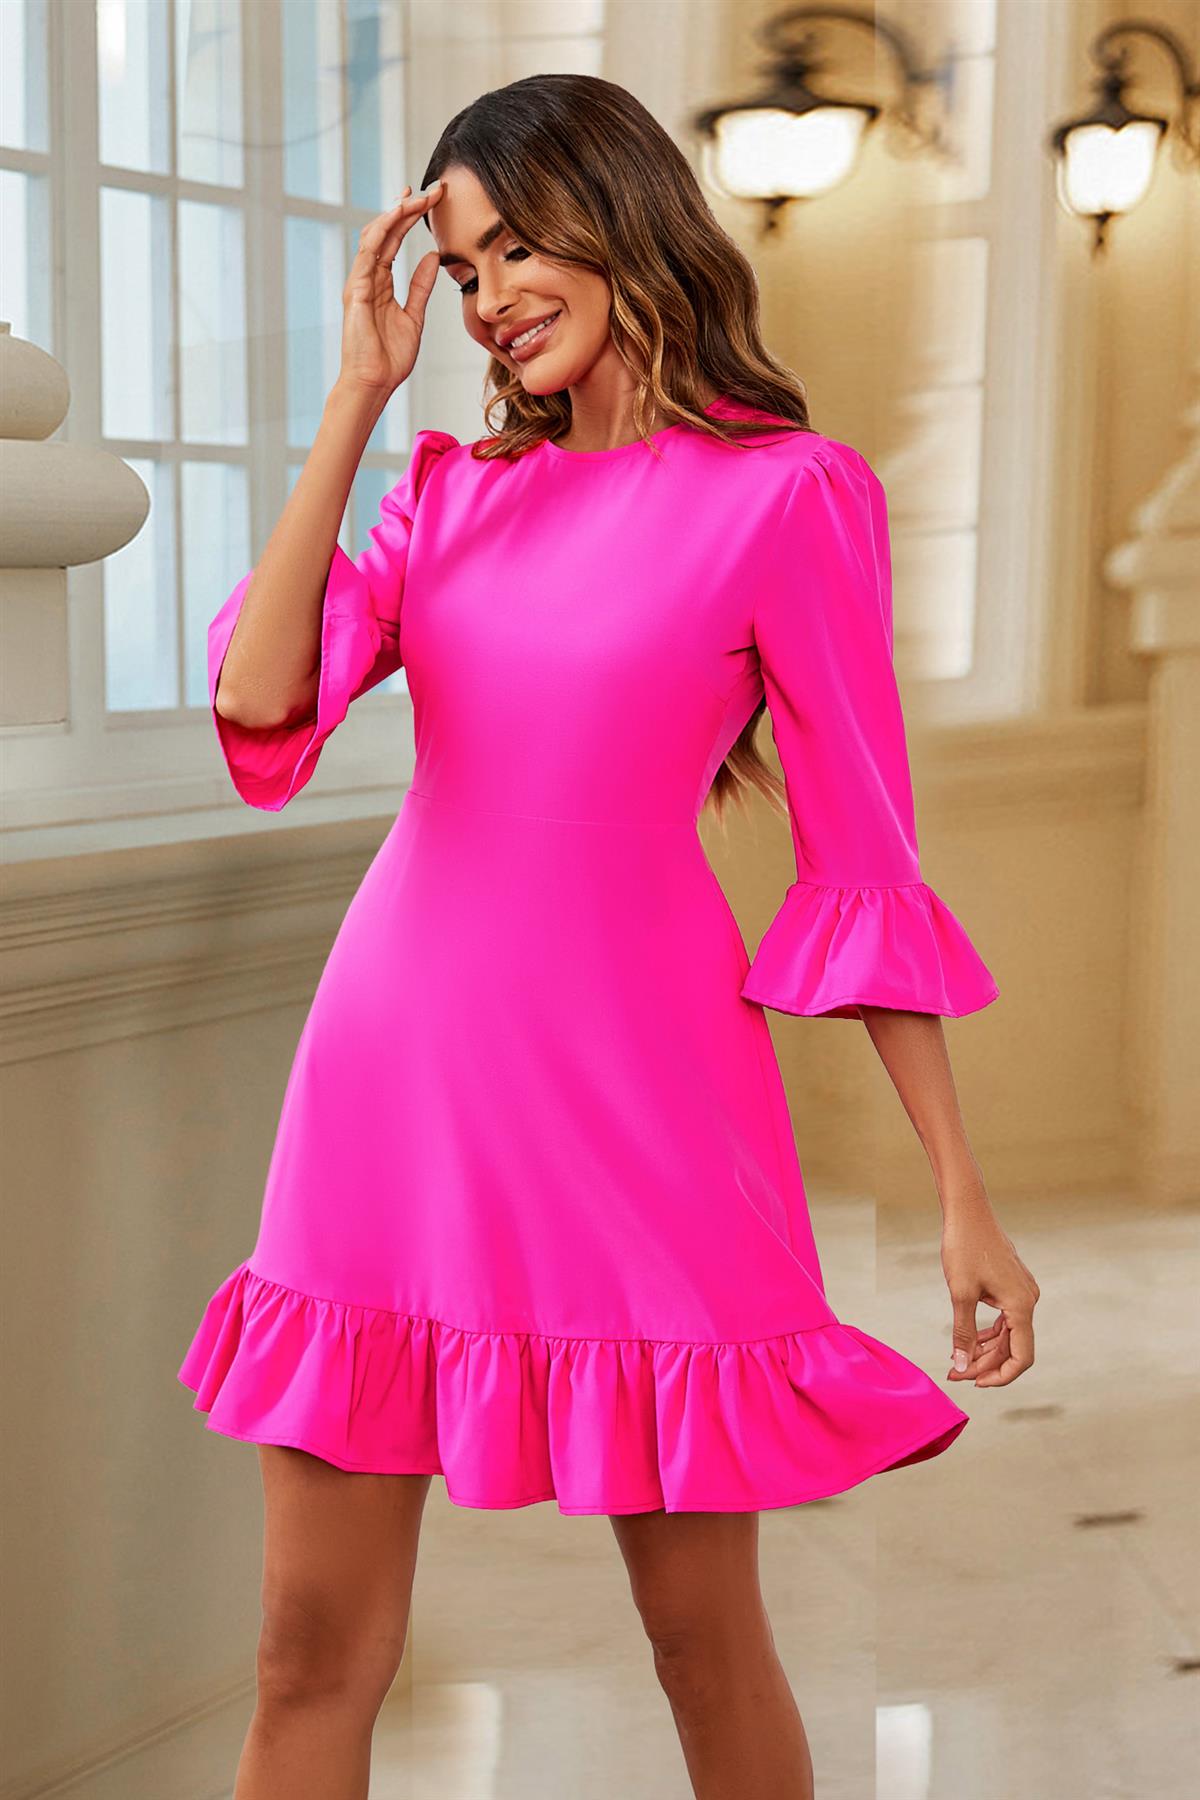 Frill Mini Dress In Fuchsia Pink FS563-Fuchsia